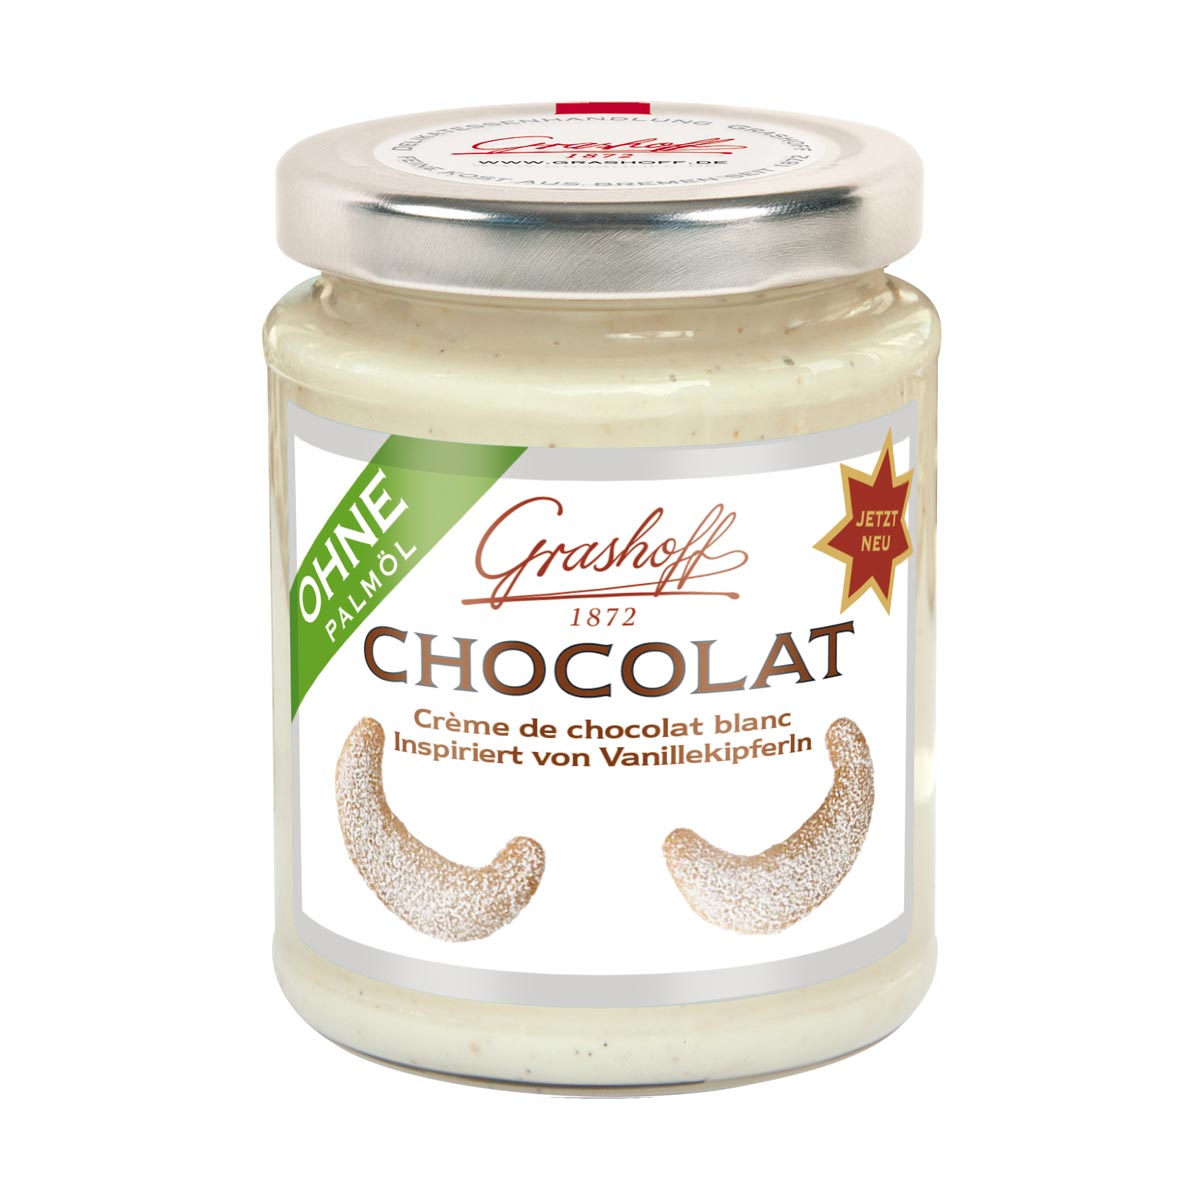 Weiße Chocolat von Vanillekipferln inspiriert